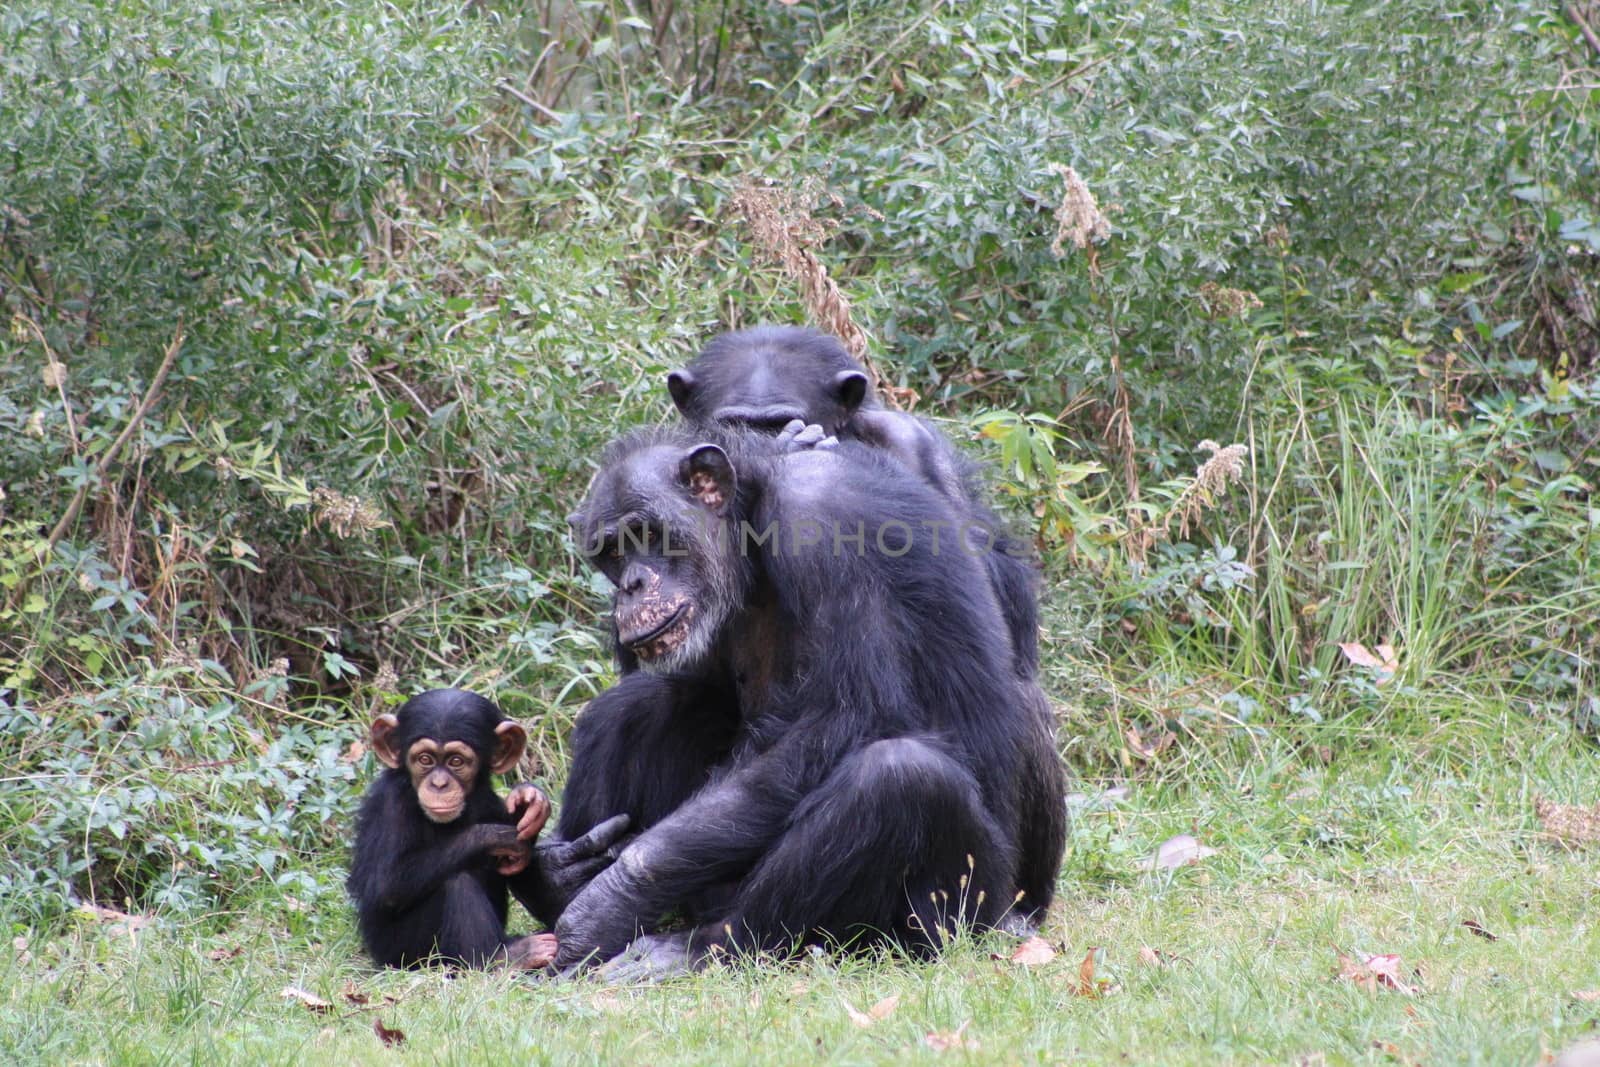 Chimp family in grassy habitat